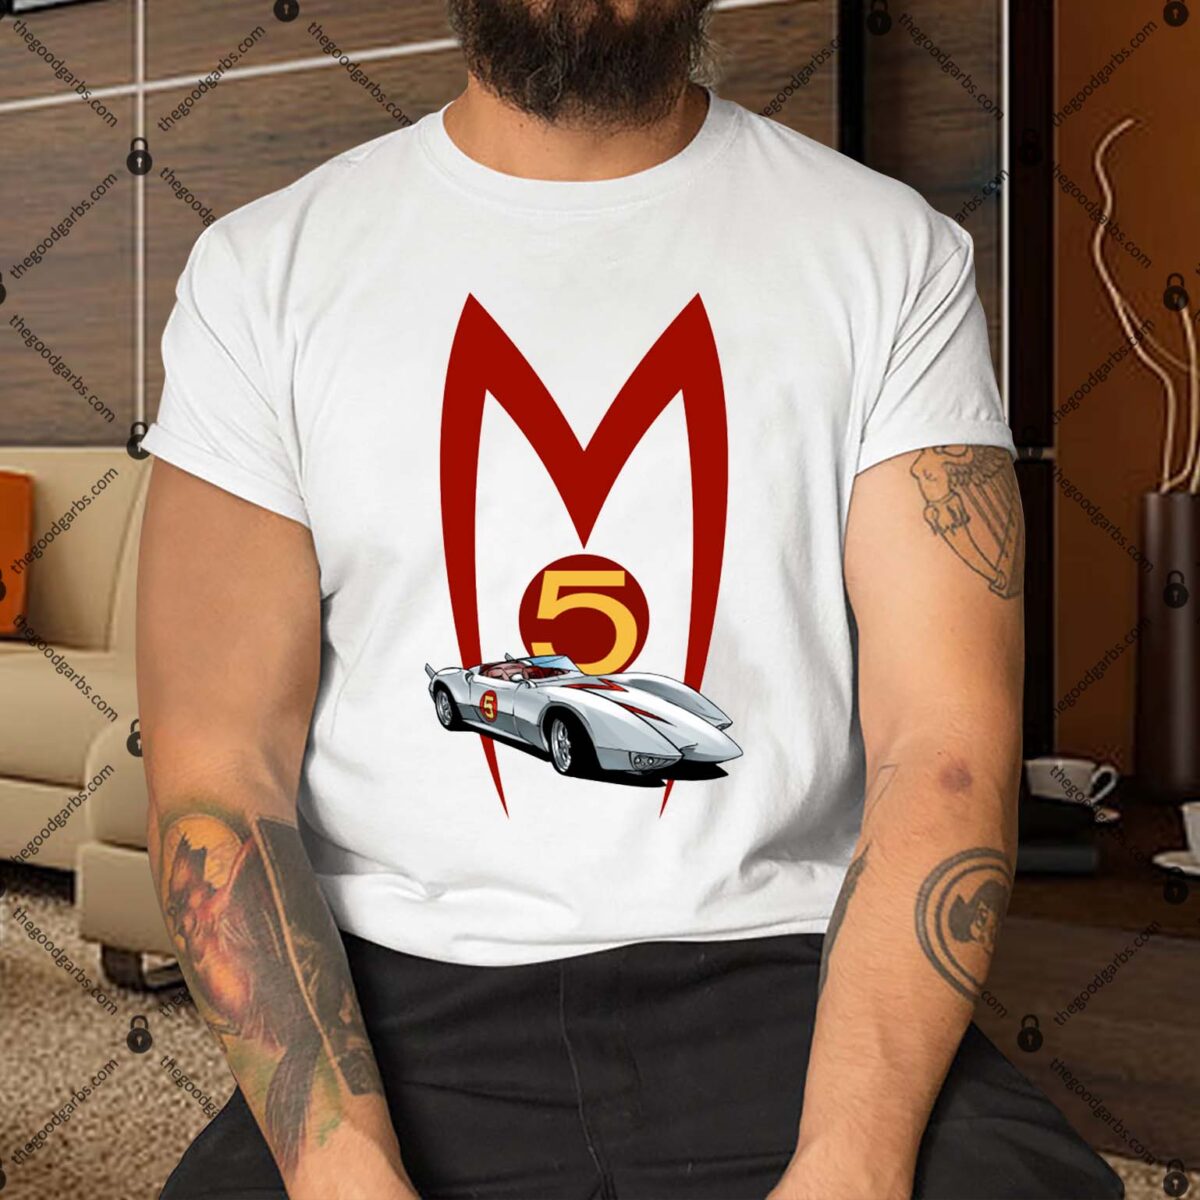 Speed Racer Mach 5 Shirt